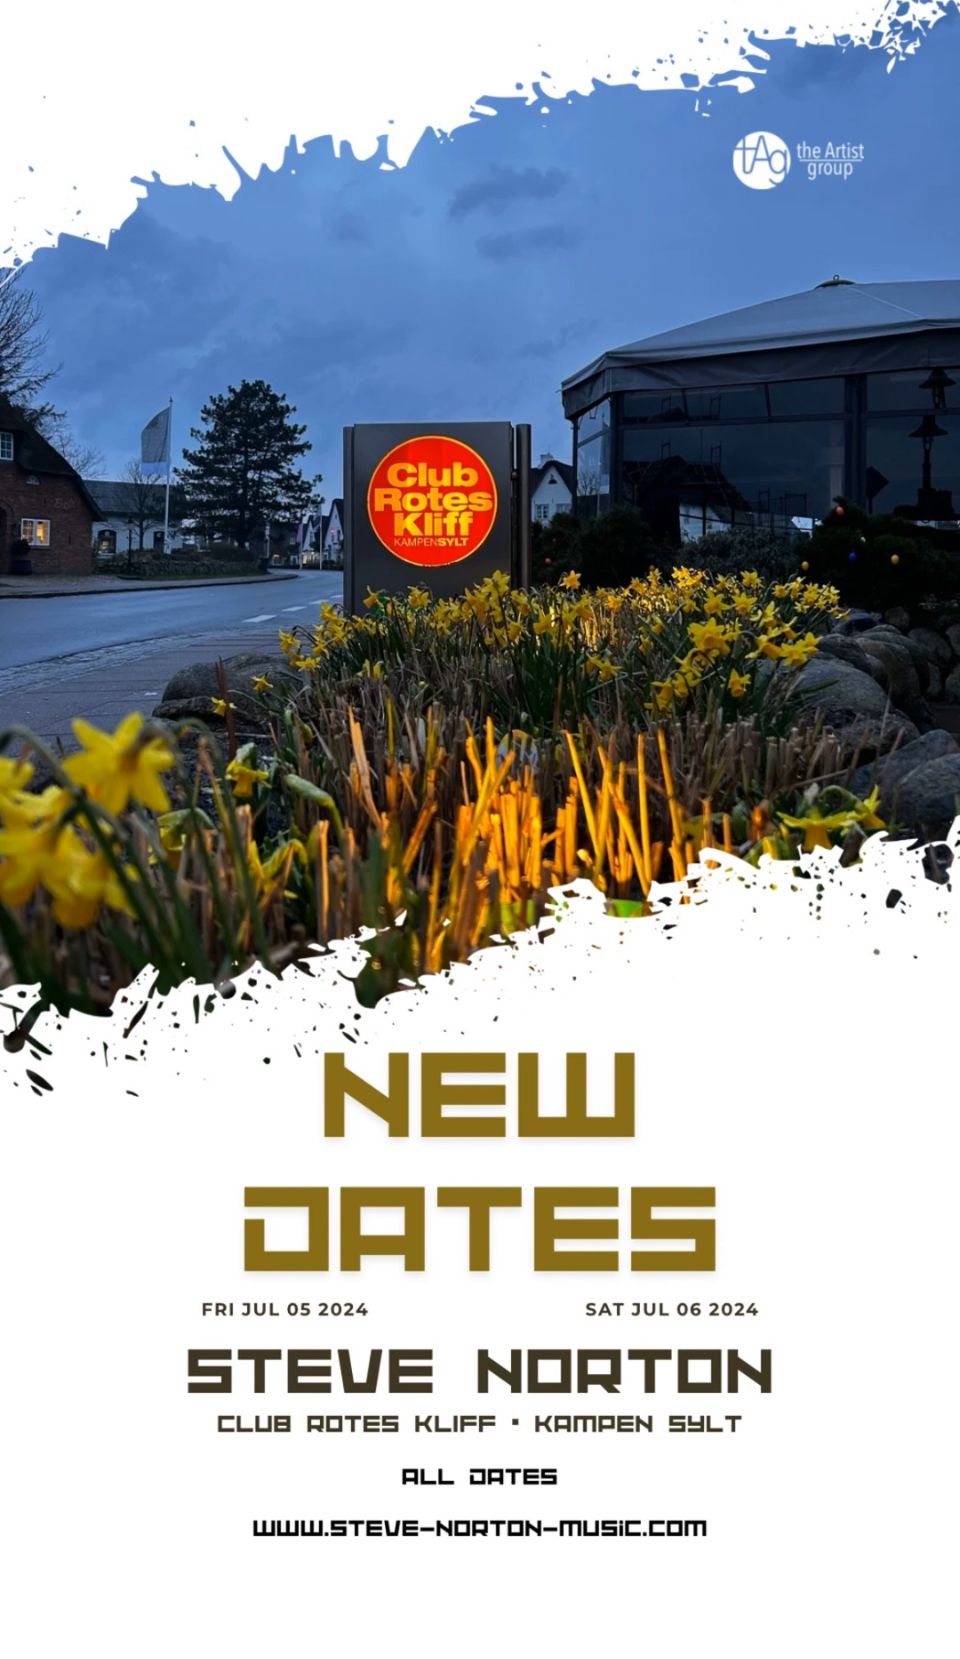 Ein Werbeplakat für bevorstehende Musikveranstaltungen im Club Rotes Kliff mit Daten und dem Namen des Künstlers, Steve Norton, vor einem Dämmerlichthintergrund mit gelben Blumen im Vordergrund.